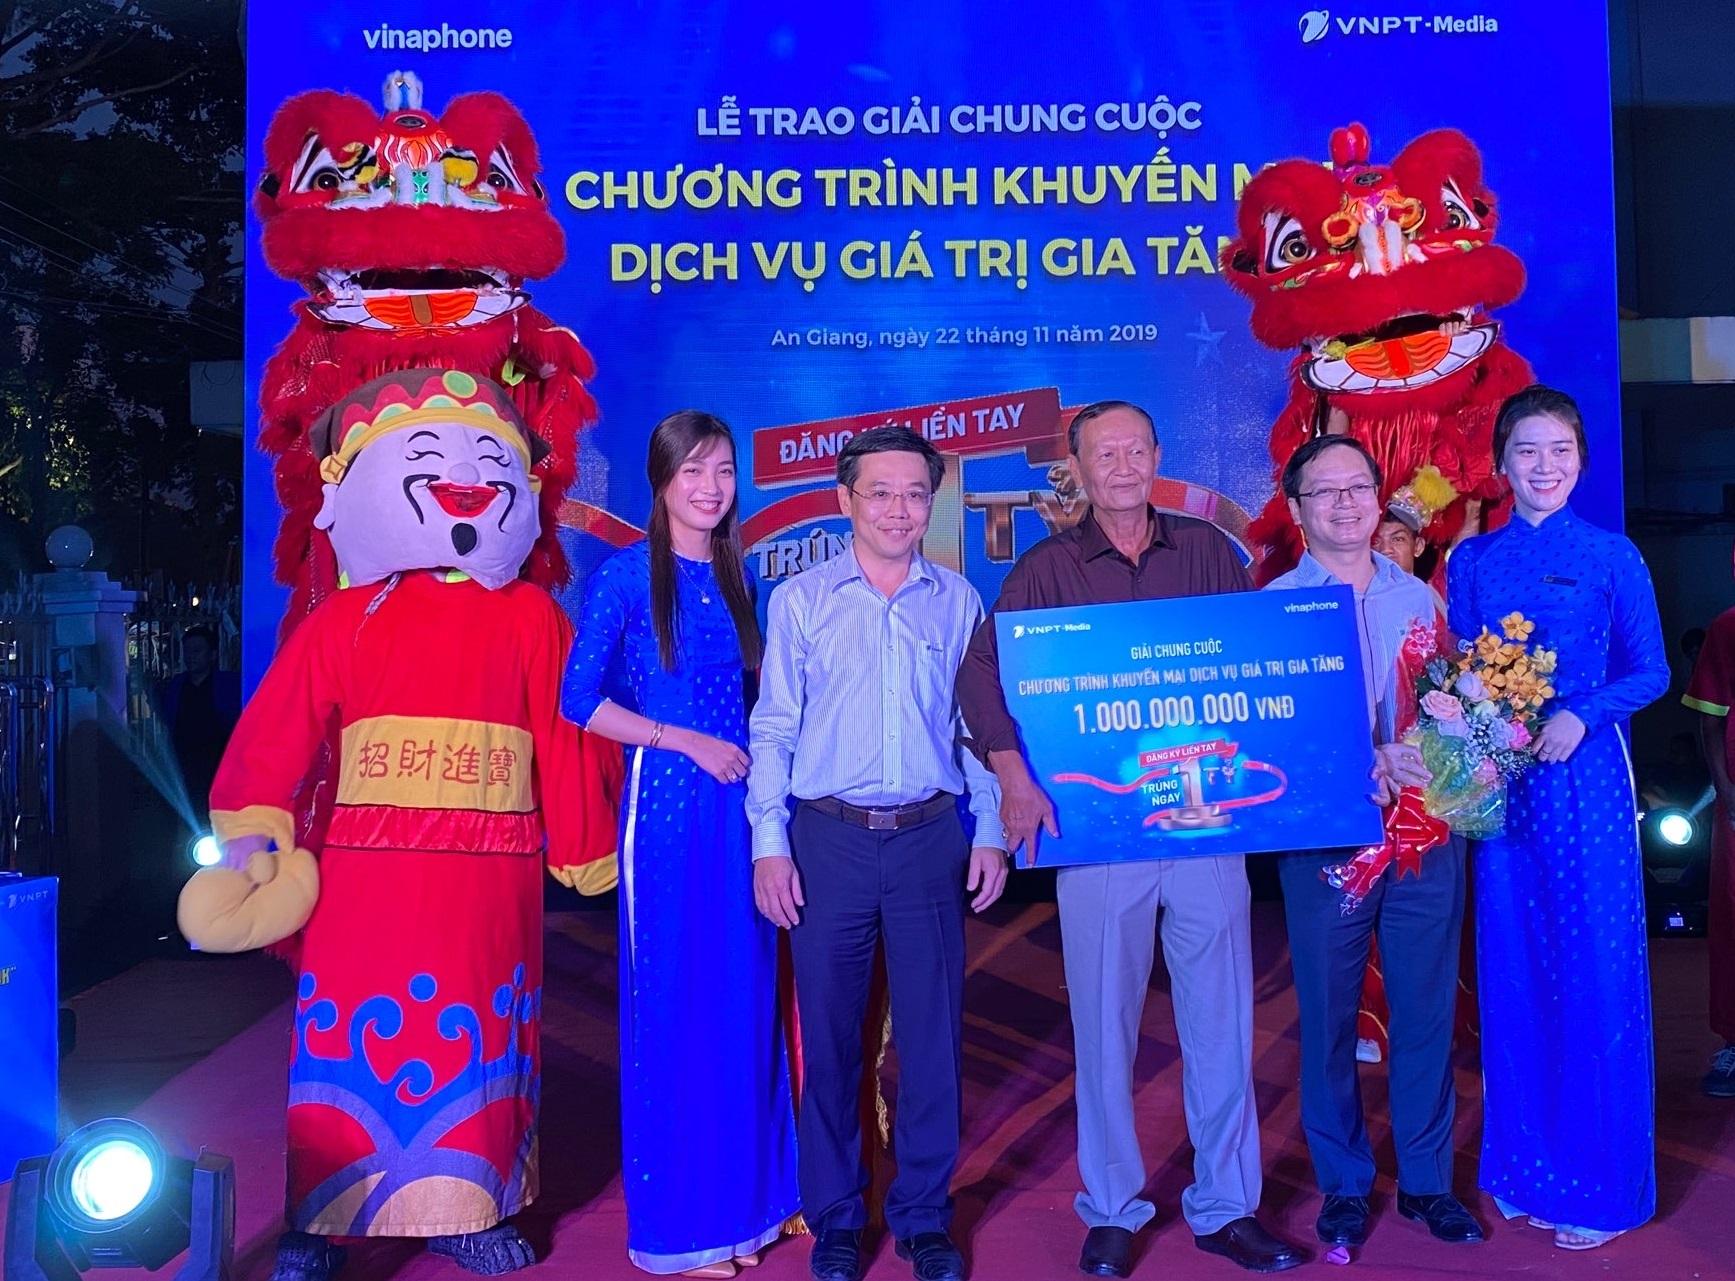 Ông Nguyễn Sơn Hải  Phó Tổng giám đốc VNPT-Media và ông Trần Thế Tuyên - Giám đốc VNPT An Giang cùng trao thưởng cho khách hàng.